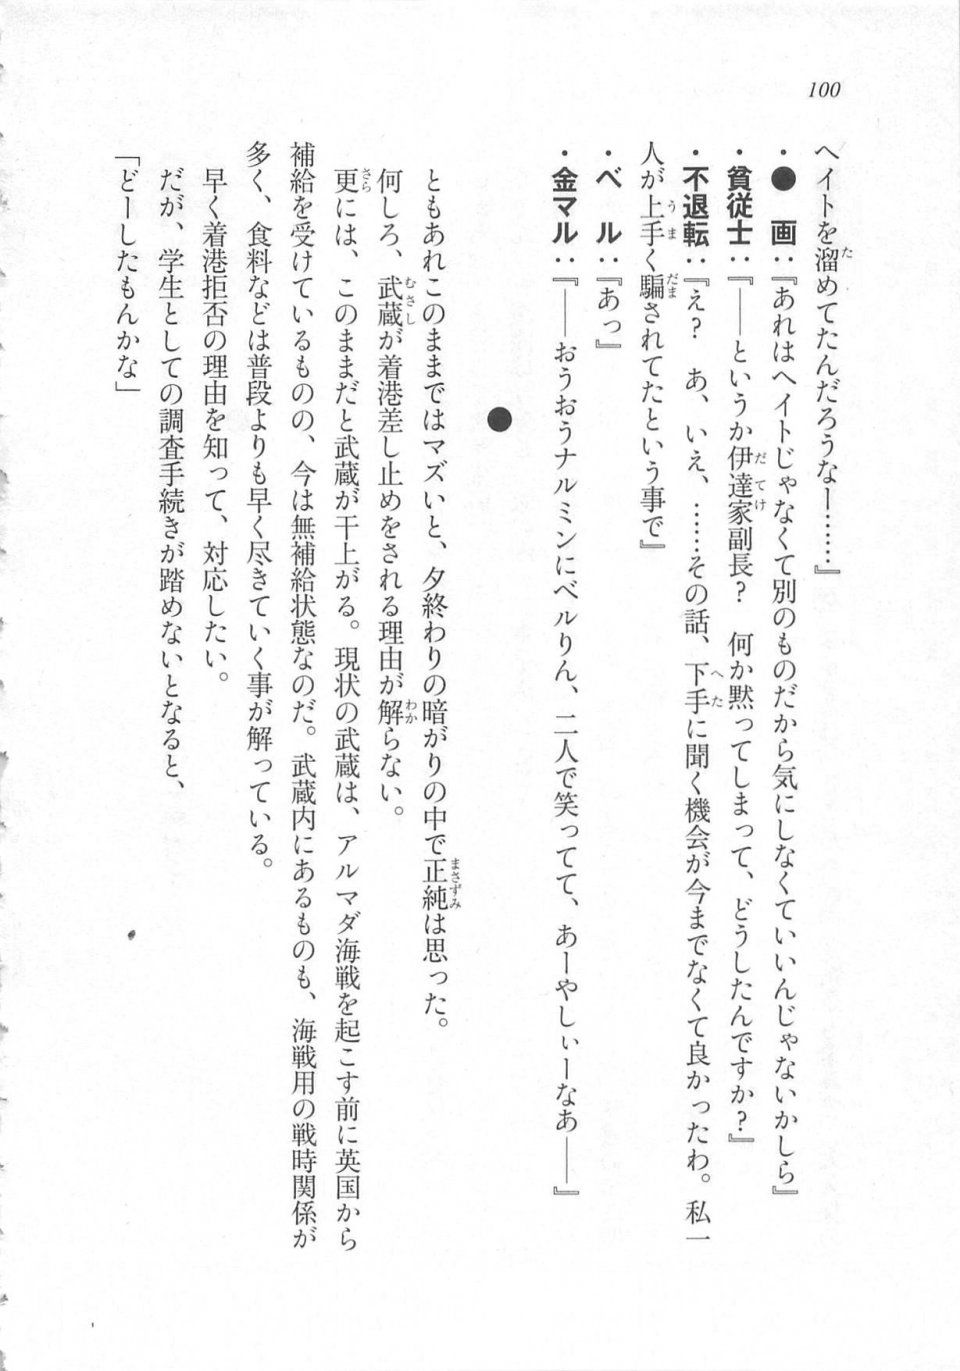 Kyoukai Senjou no Horizon LN Sidestory Vol 3 - Photo #104